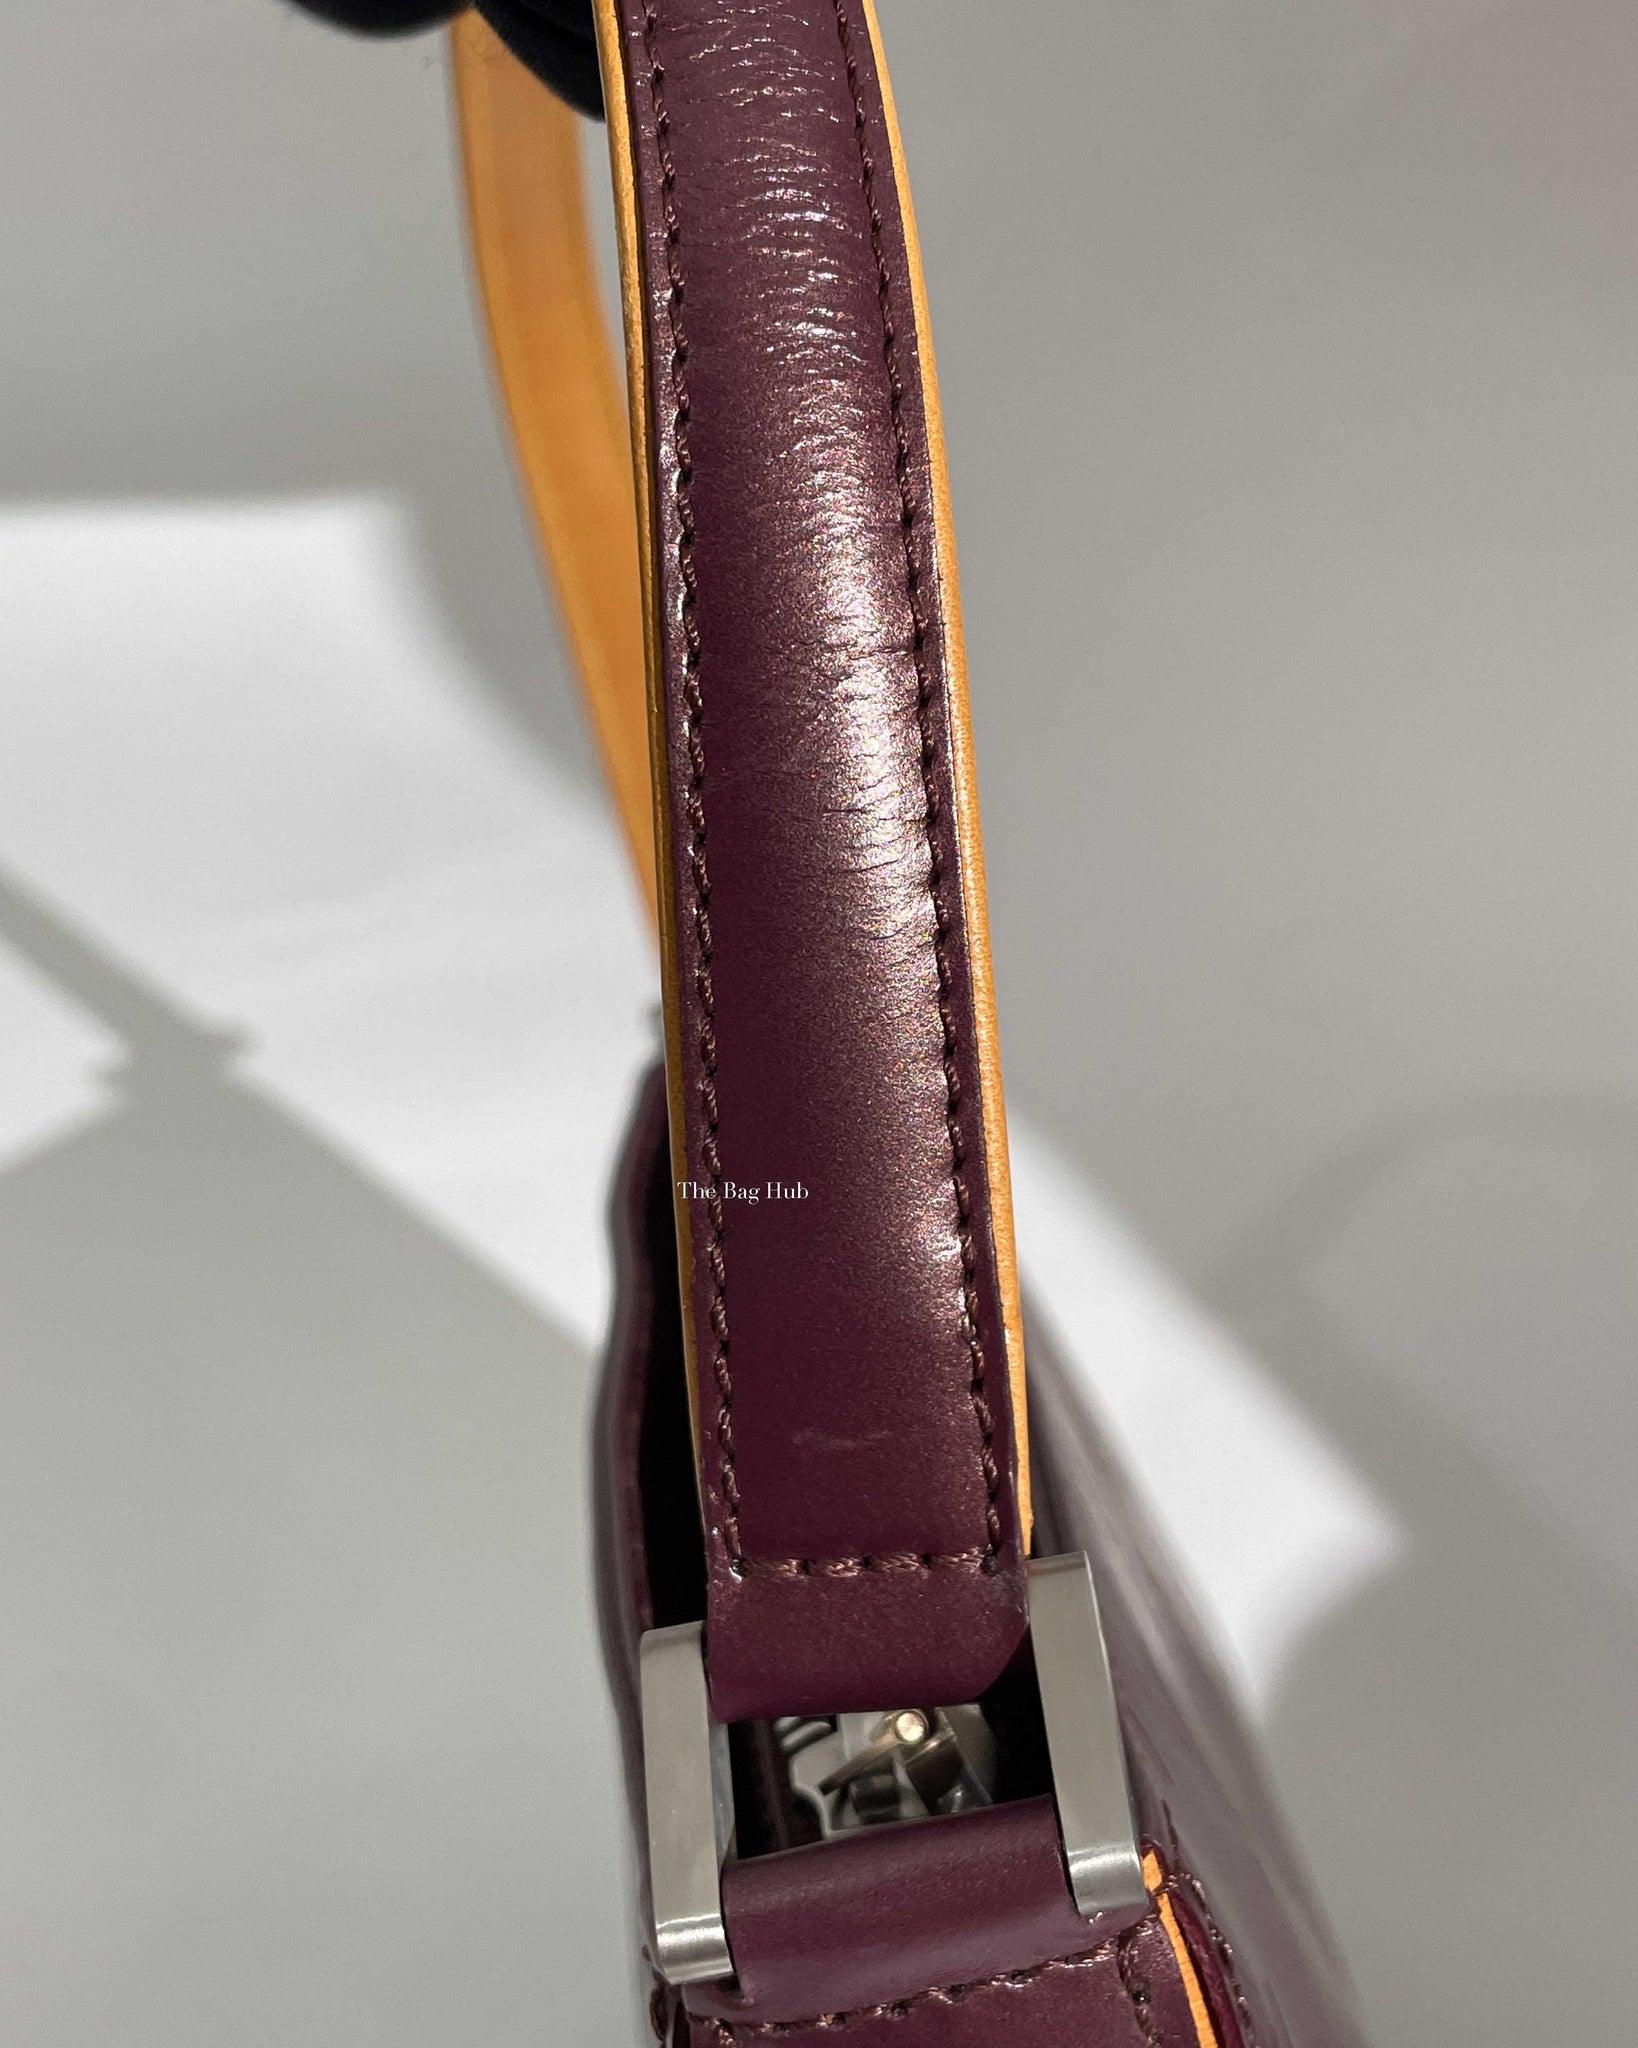 Louis Vuitton Bordeaux Monogram Vernis Mat Fowler Pochette Accessoires Pouch 927lv39